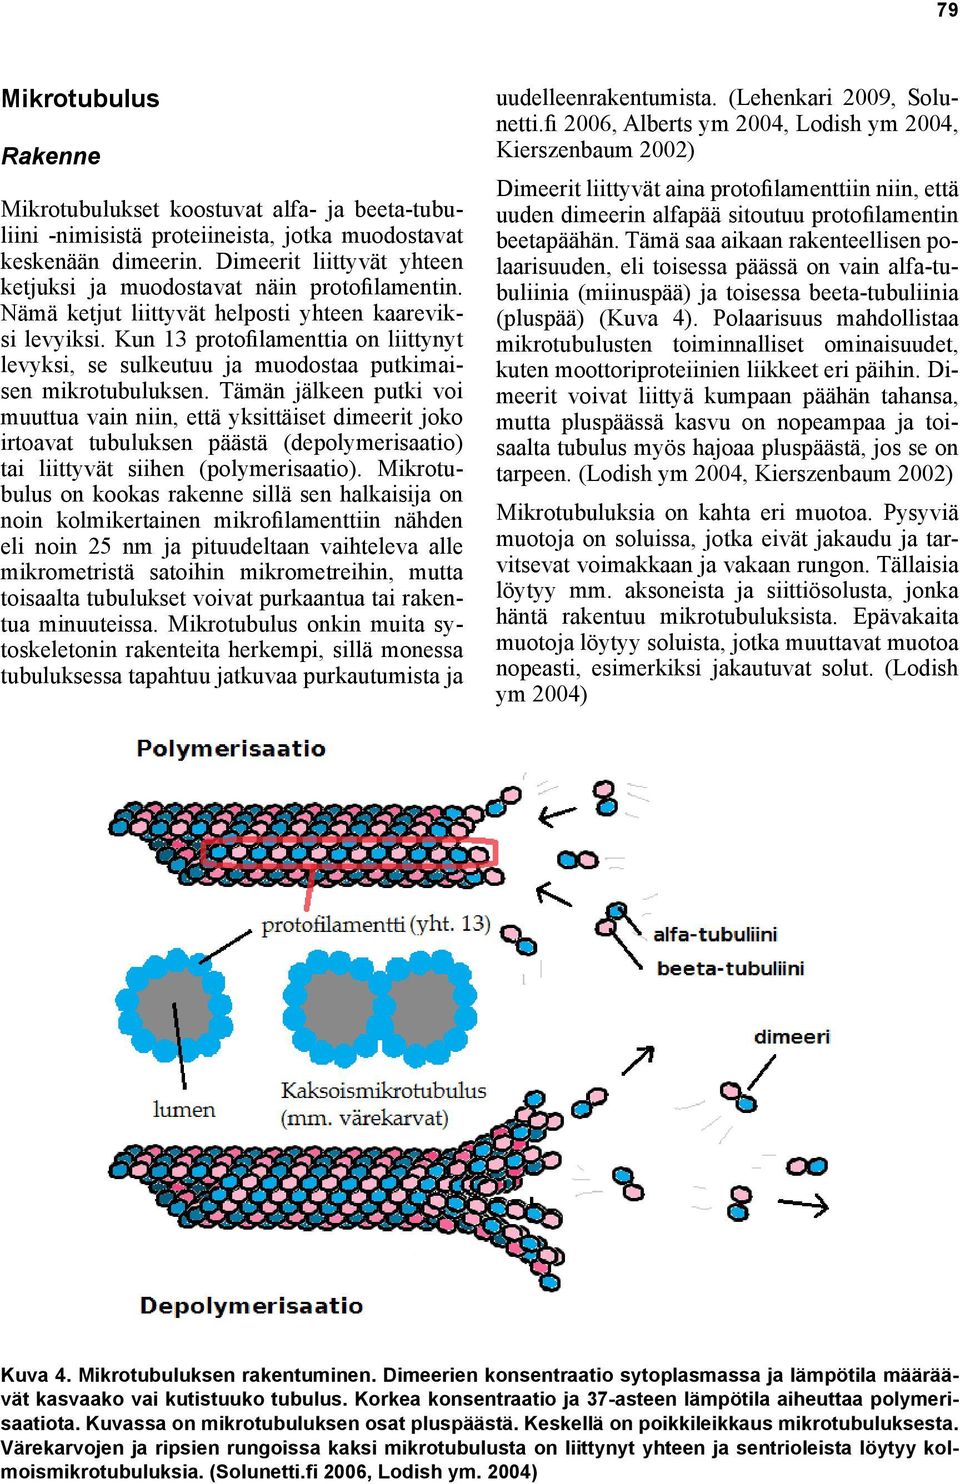 Kun 13 protofilamenttia on liittynyt levyksi, se sulkeutuu ja muodostaa putkimaisen mikrotubuluksen.